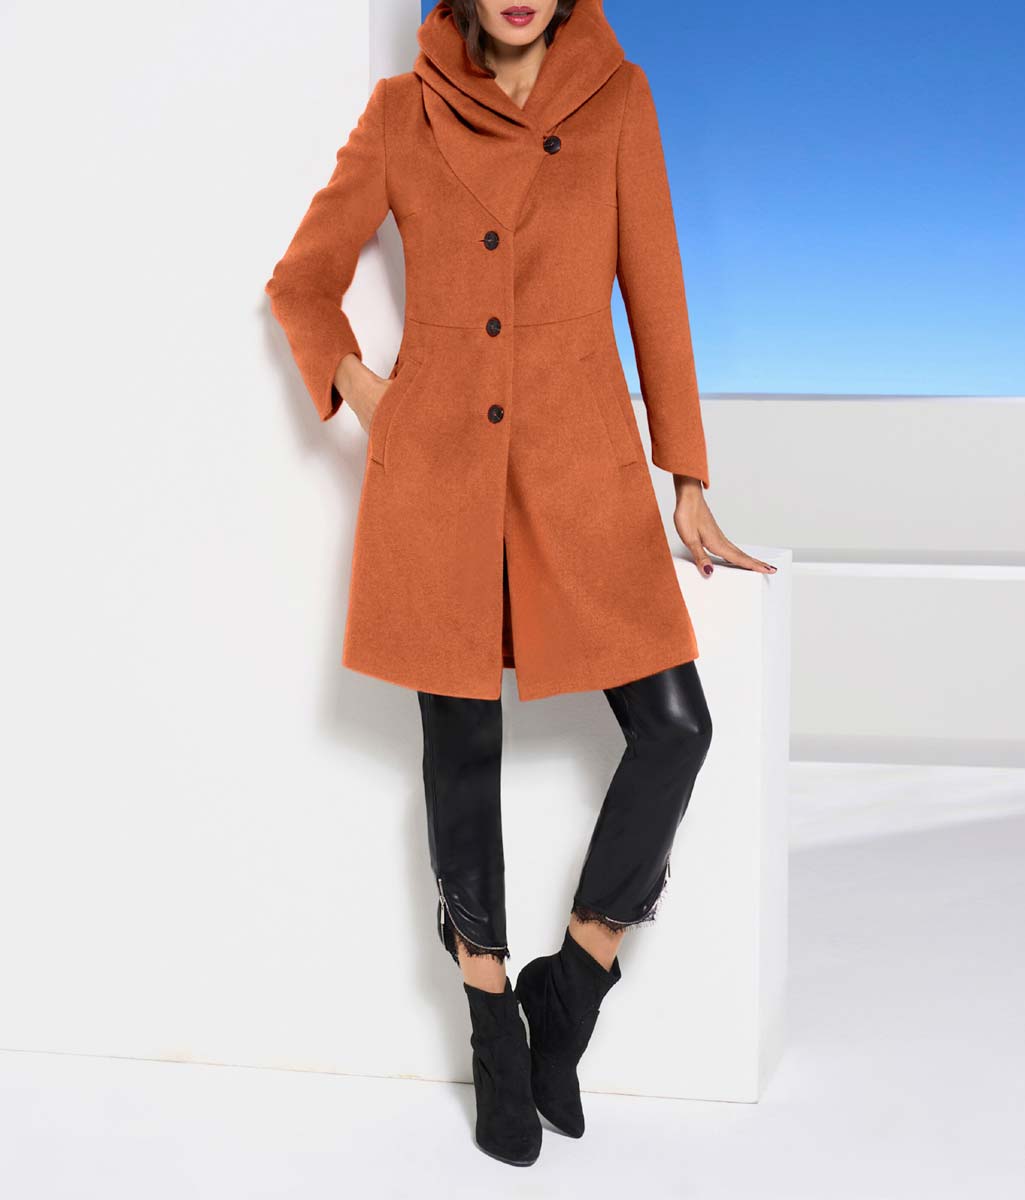 Dizajnový vlnený kabát s kapucňou Ashley Brooke, mandarínka